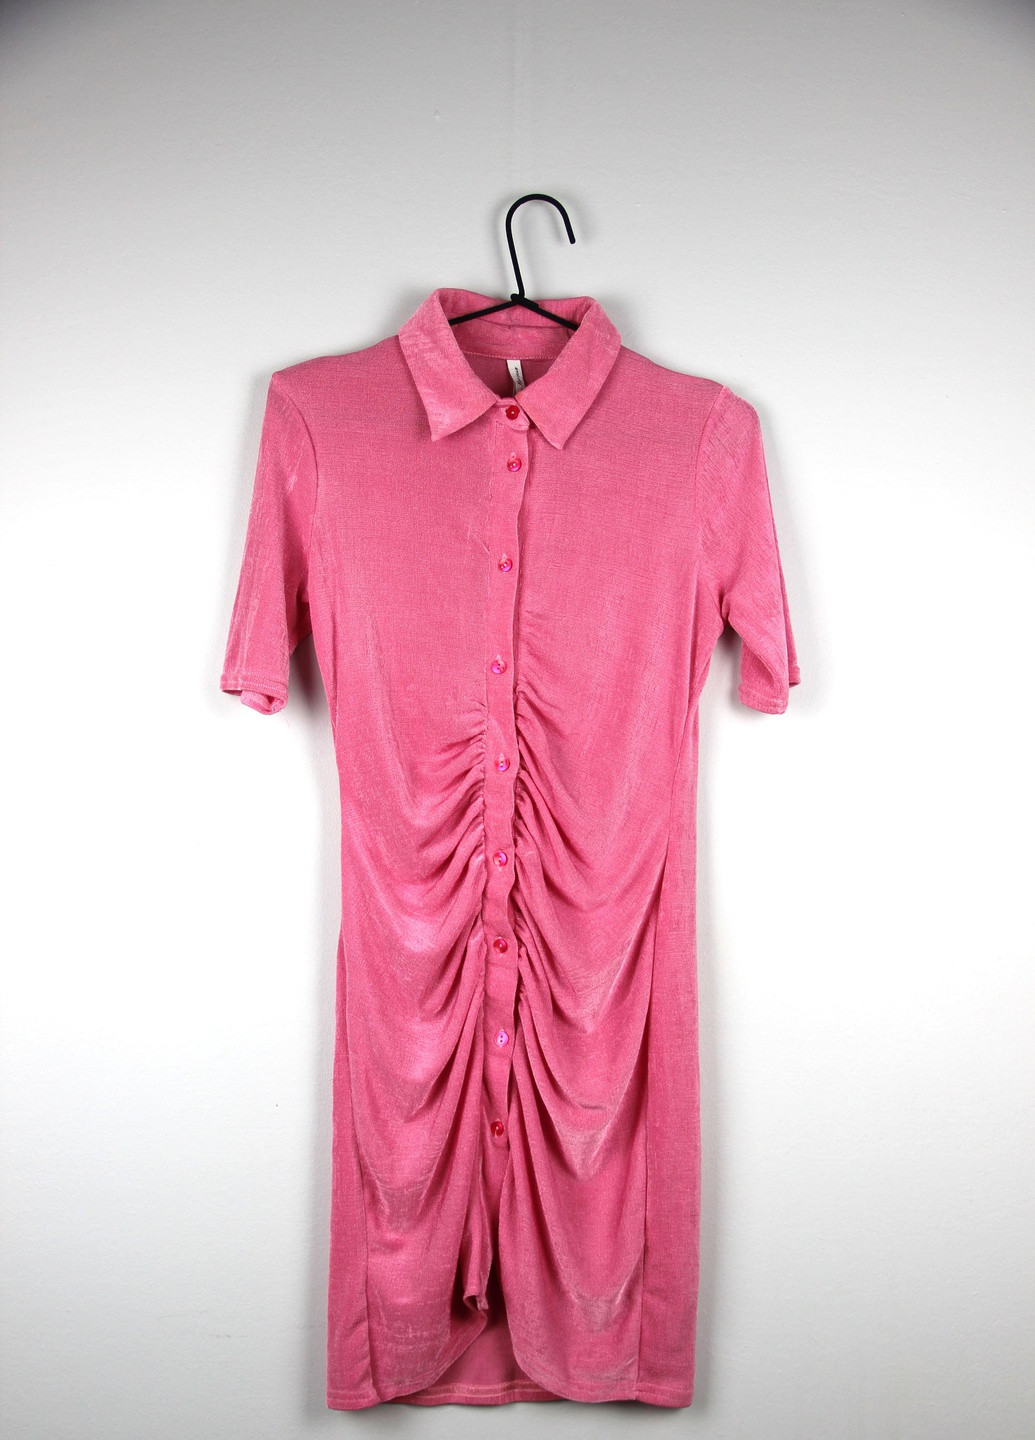 Розовое платье Asos